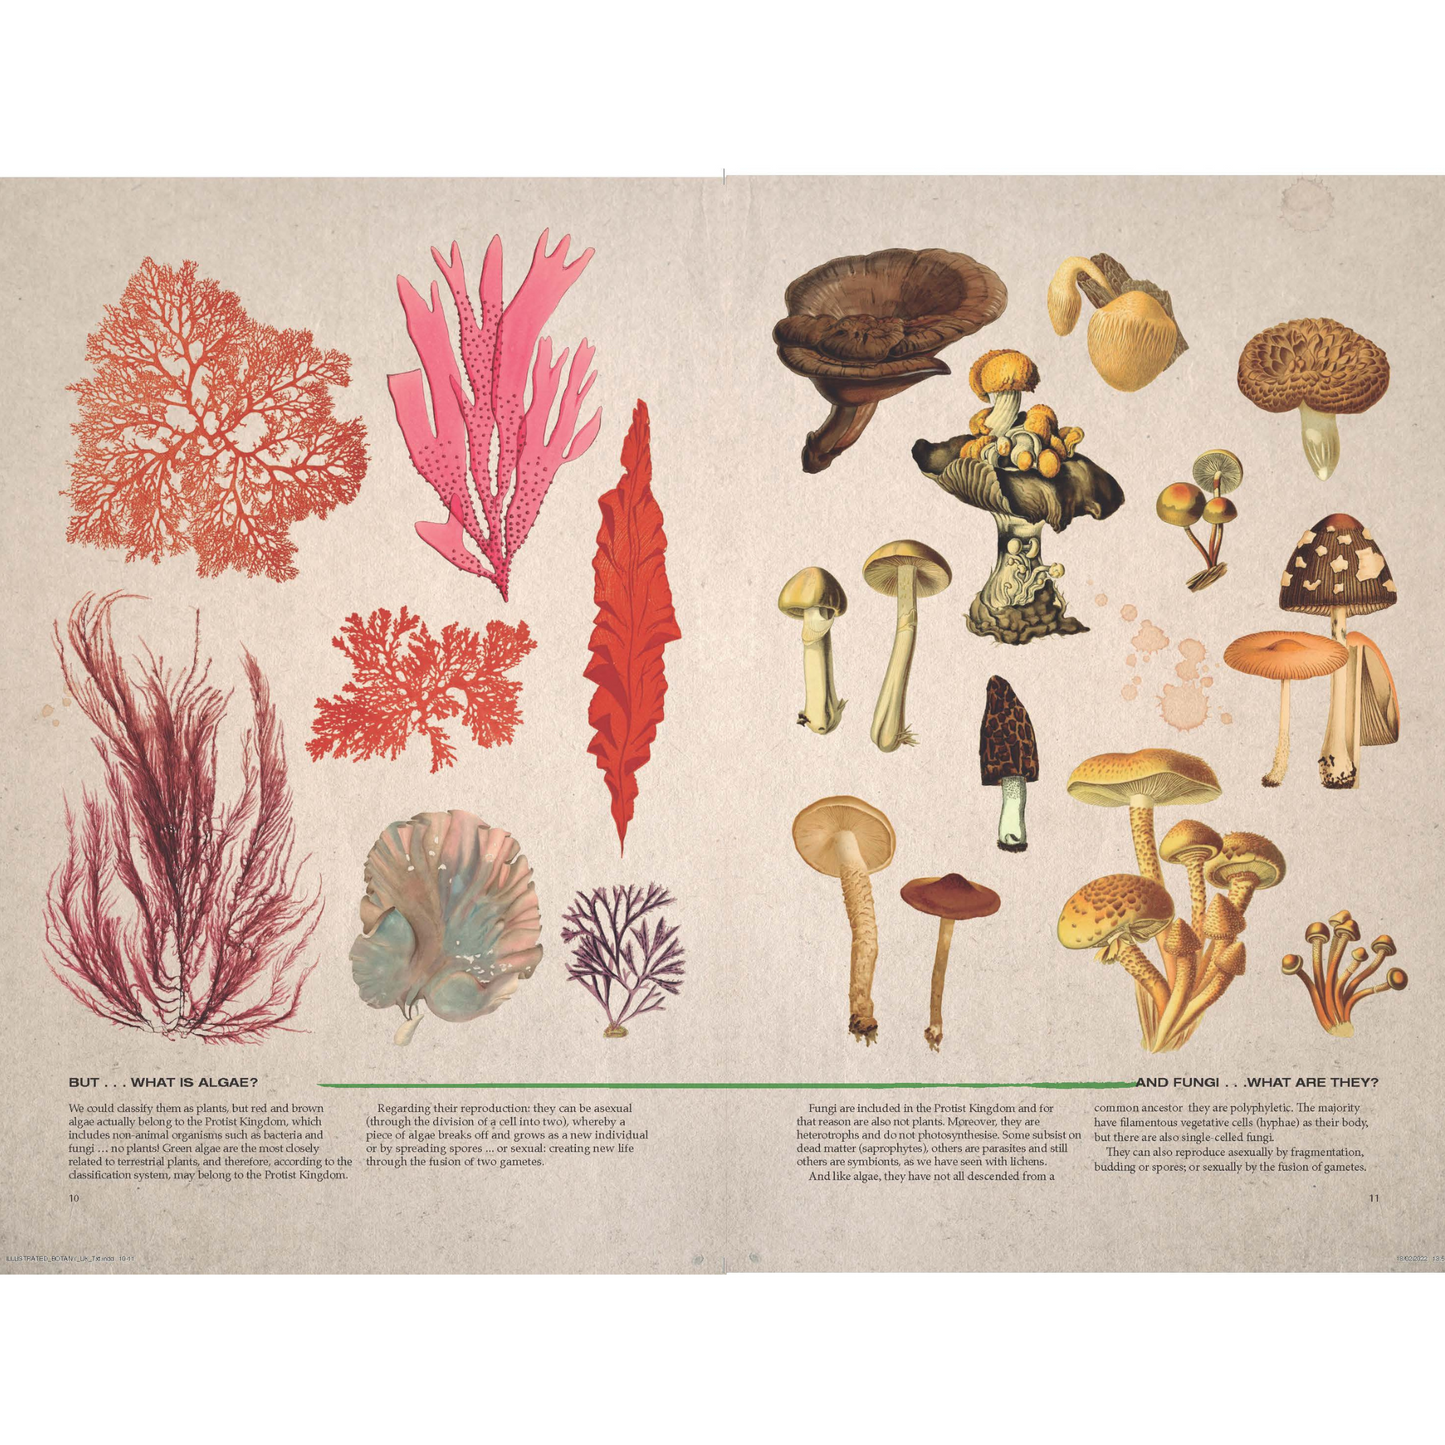 Illustrated Botany